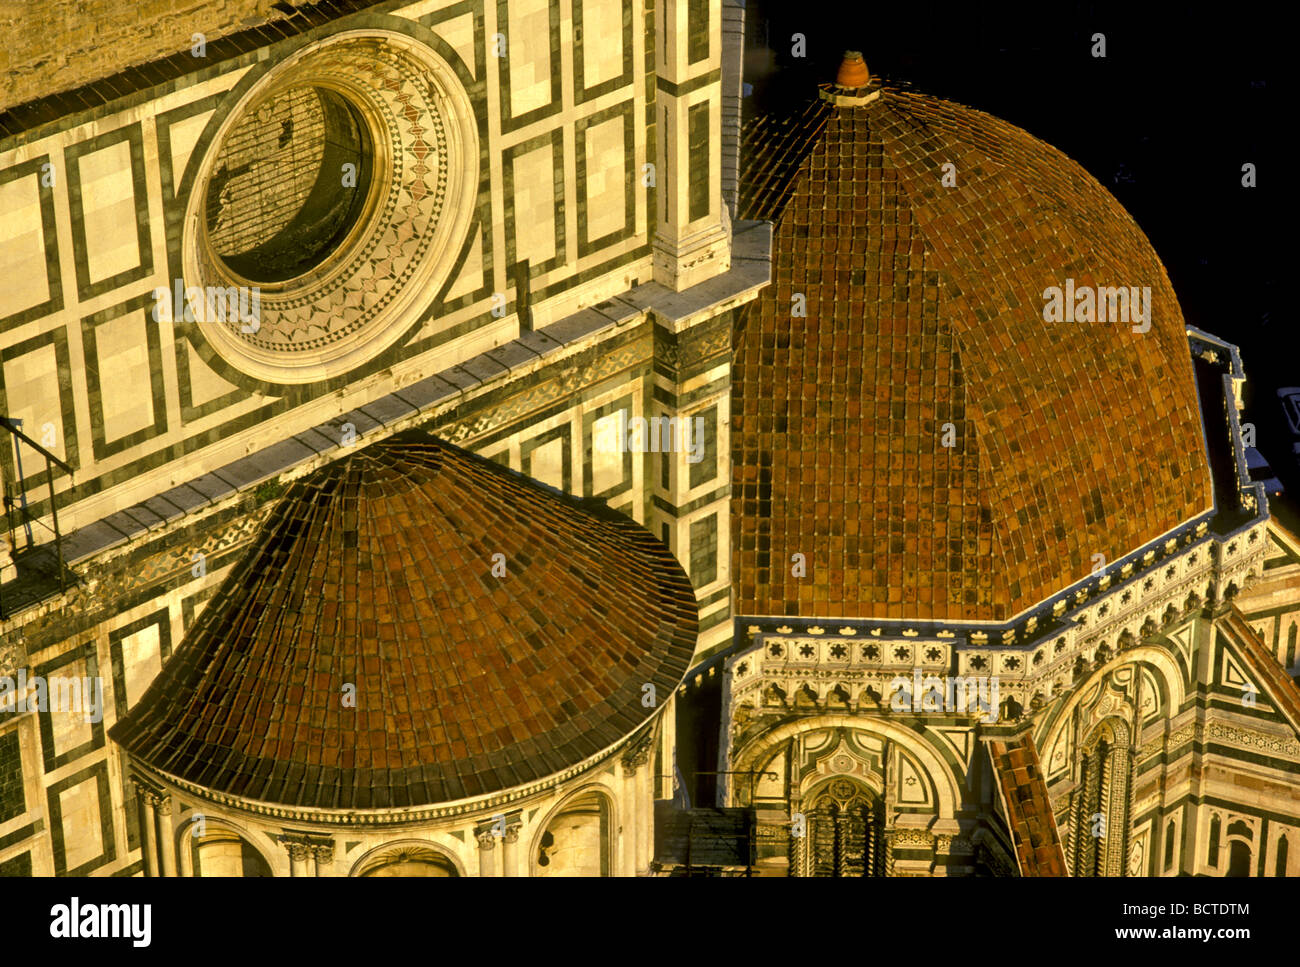 Dettaglio le pareti di marmo e piastrelle cupole del Duomo, chiesa cattedrale, Florence, Firenze, Italia, Europa Foto Stock